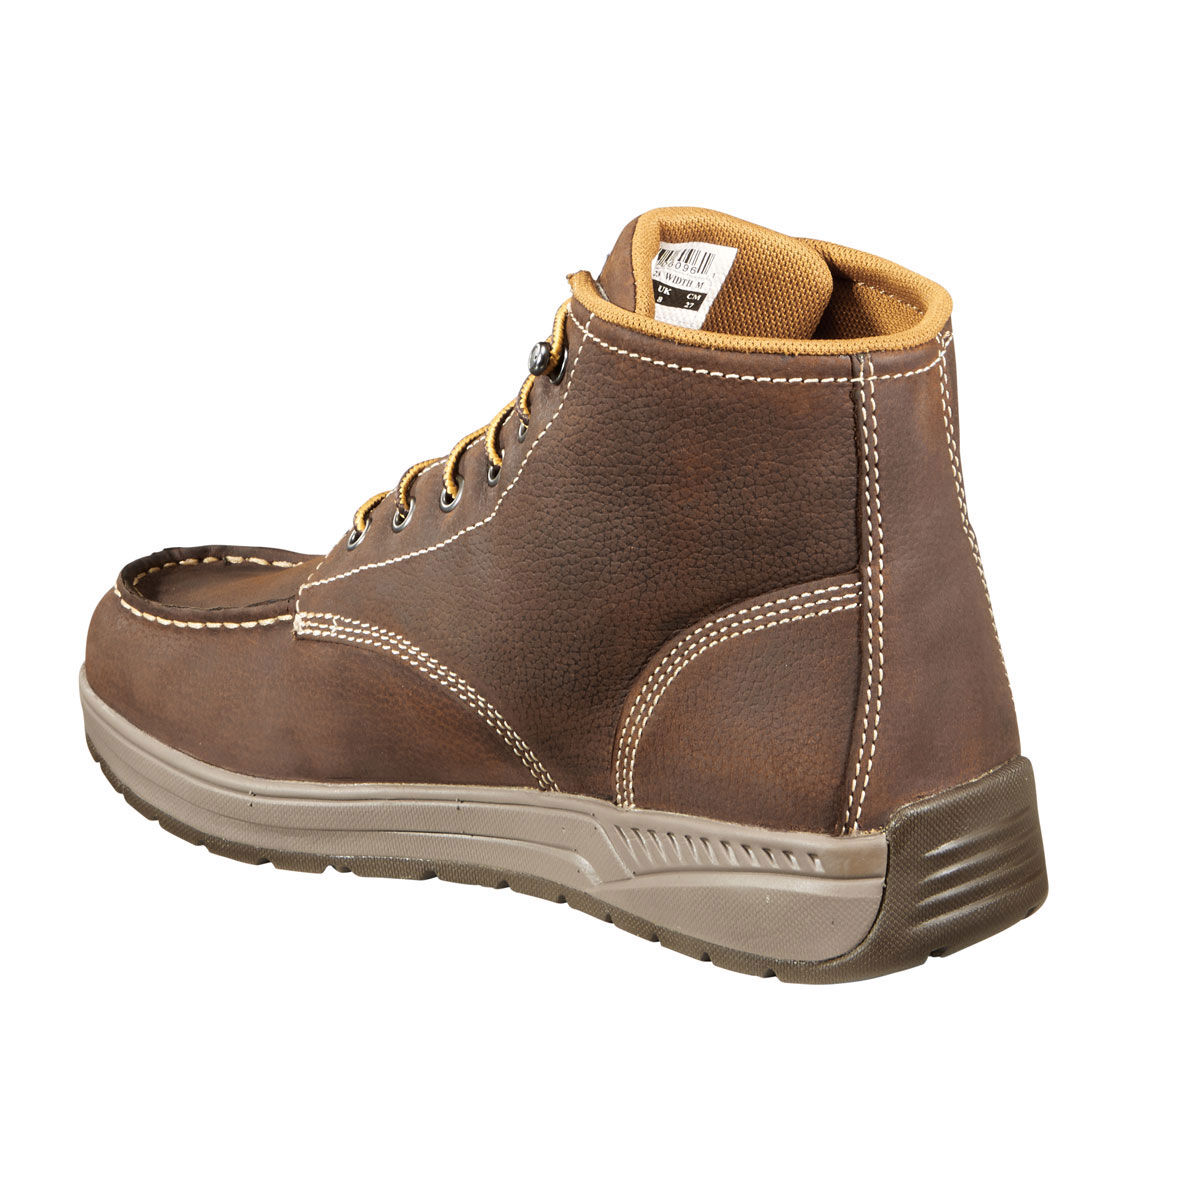 Carhartt Lightweight Wedge Boots Online | congdoan.sgu.edu.vn